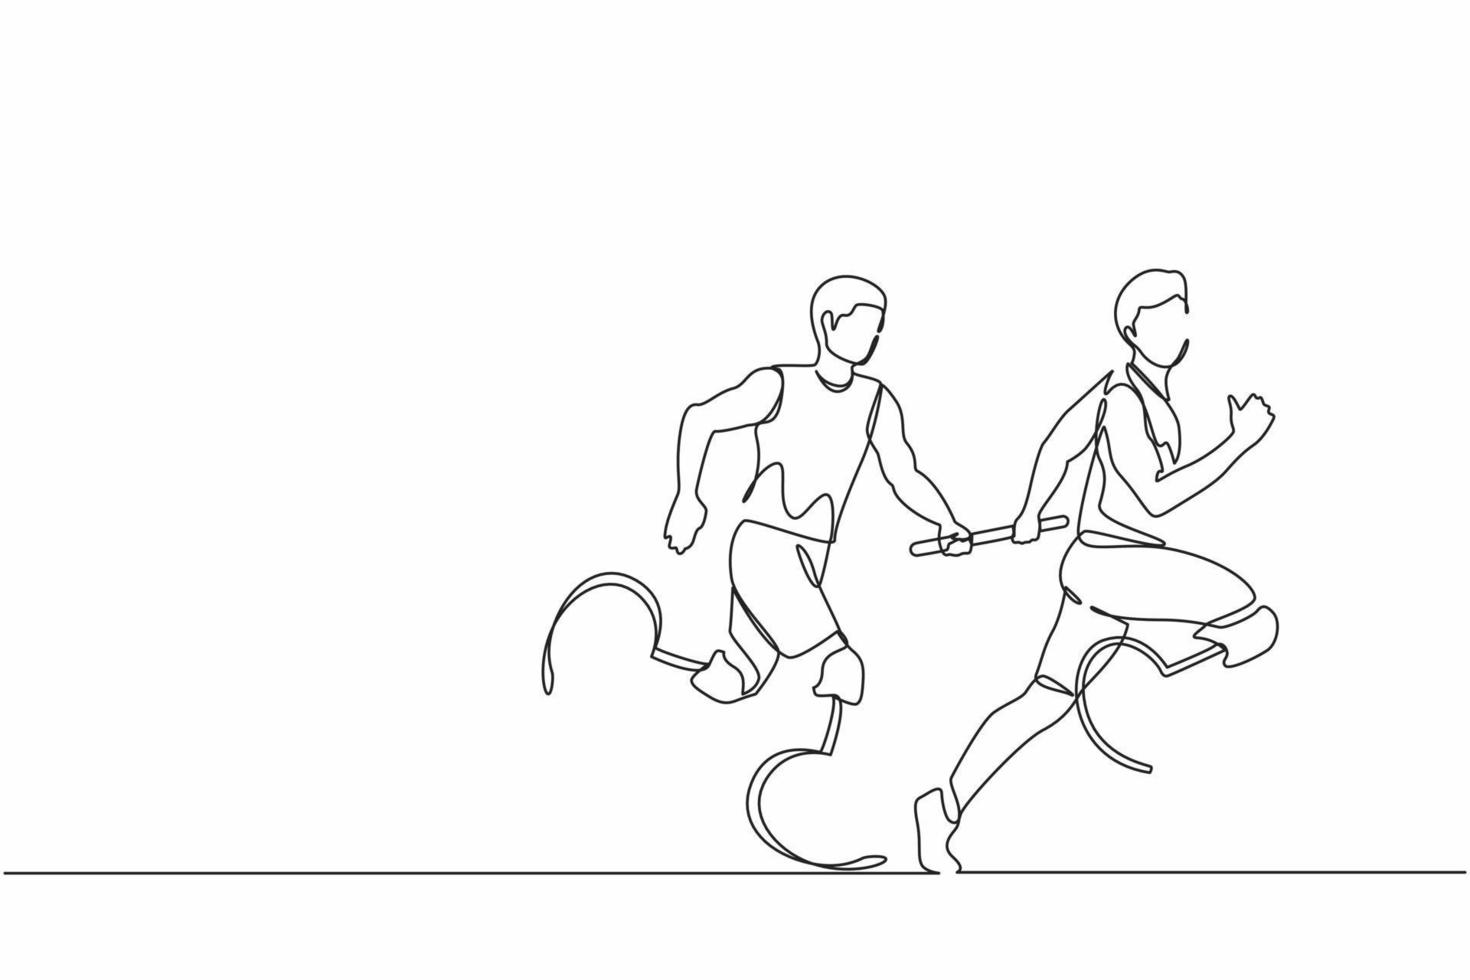 dibujo de una línea continua dos corredores discapacitados con prótesis de pierna, hombres discapacitados, atletas amputados, amputados corriendo en carrera de relevos entregando el bastón. gráfico vectorial de diseño de dibujo de una sola línea vector